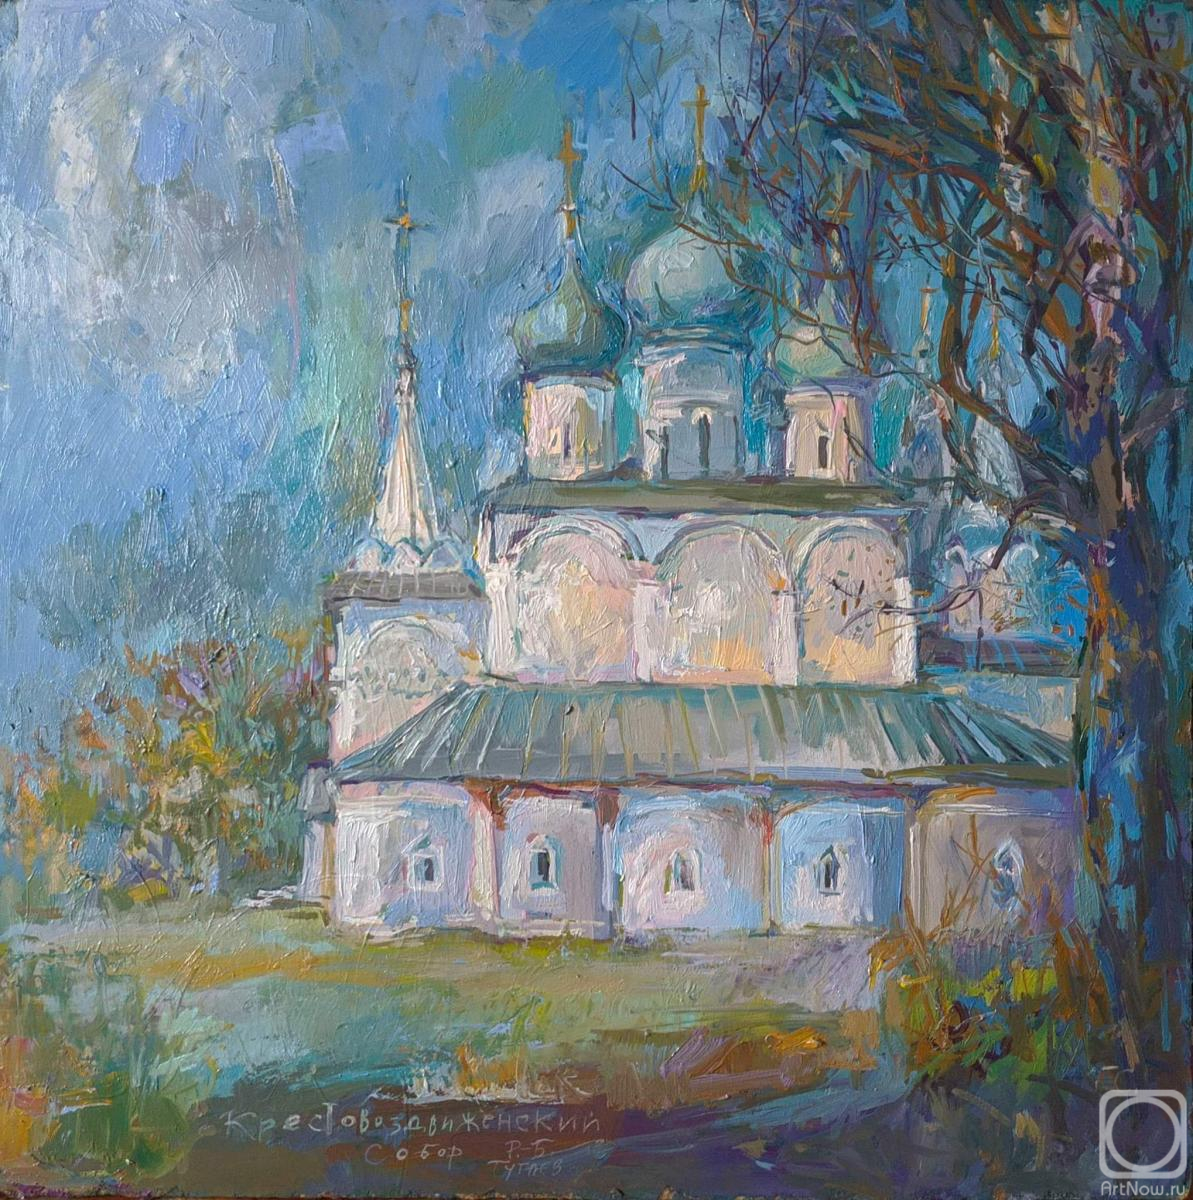 Samoshchenkova Galina. Holy Cross Cathedral